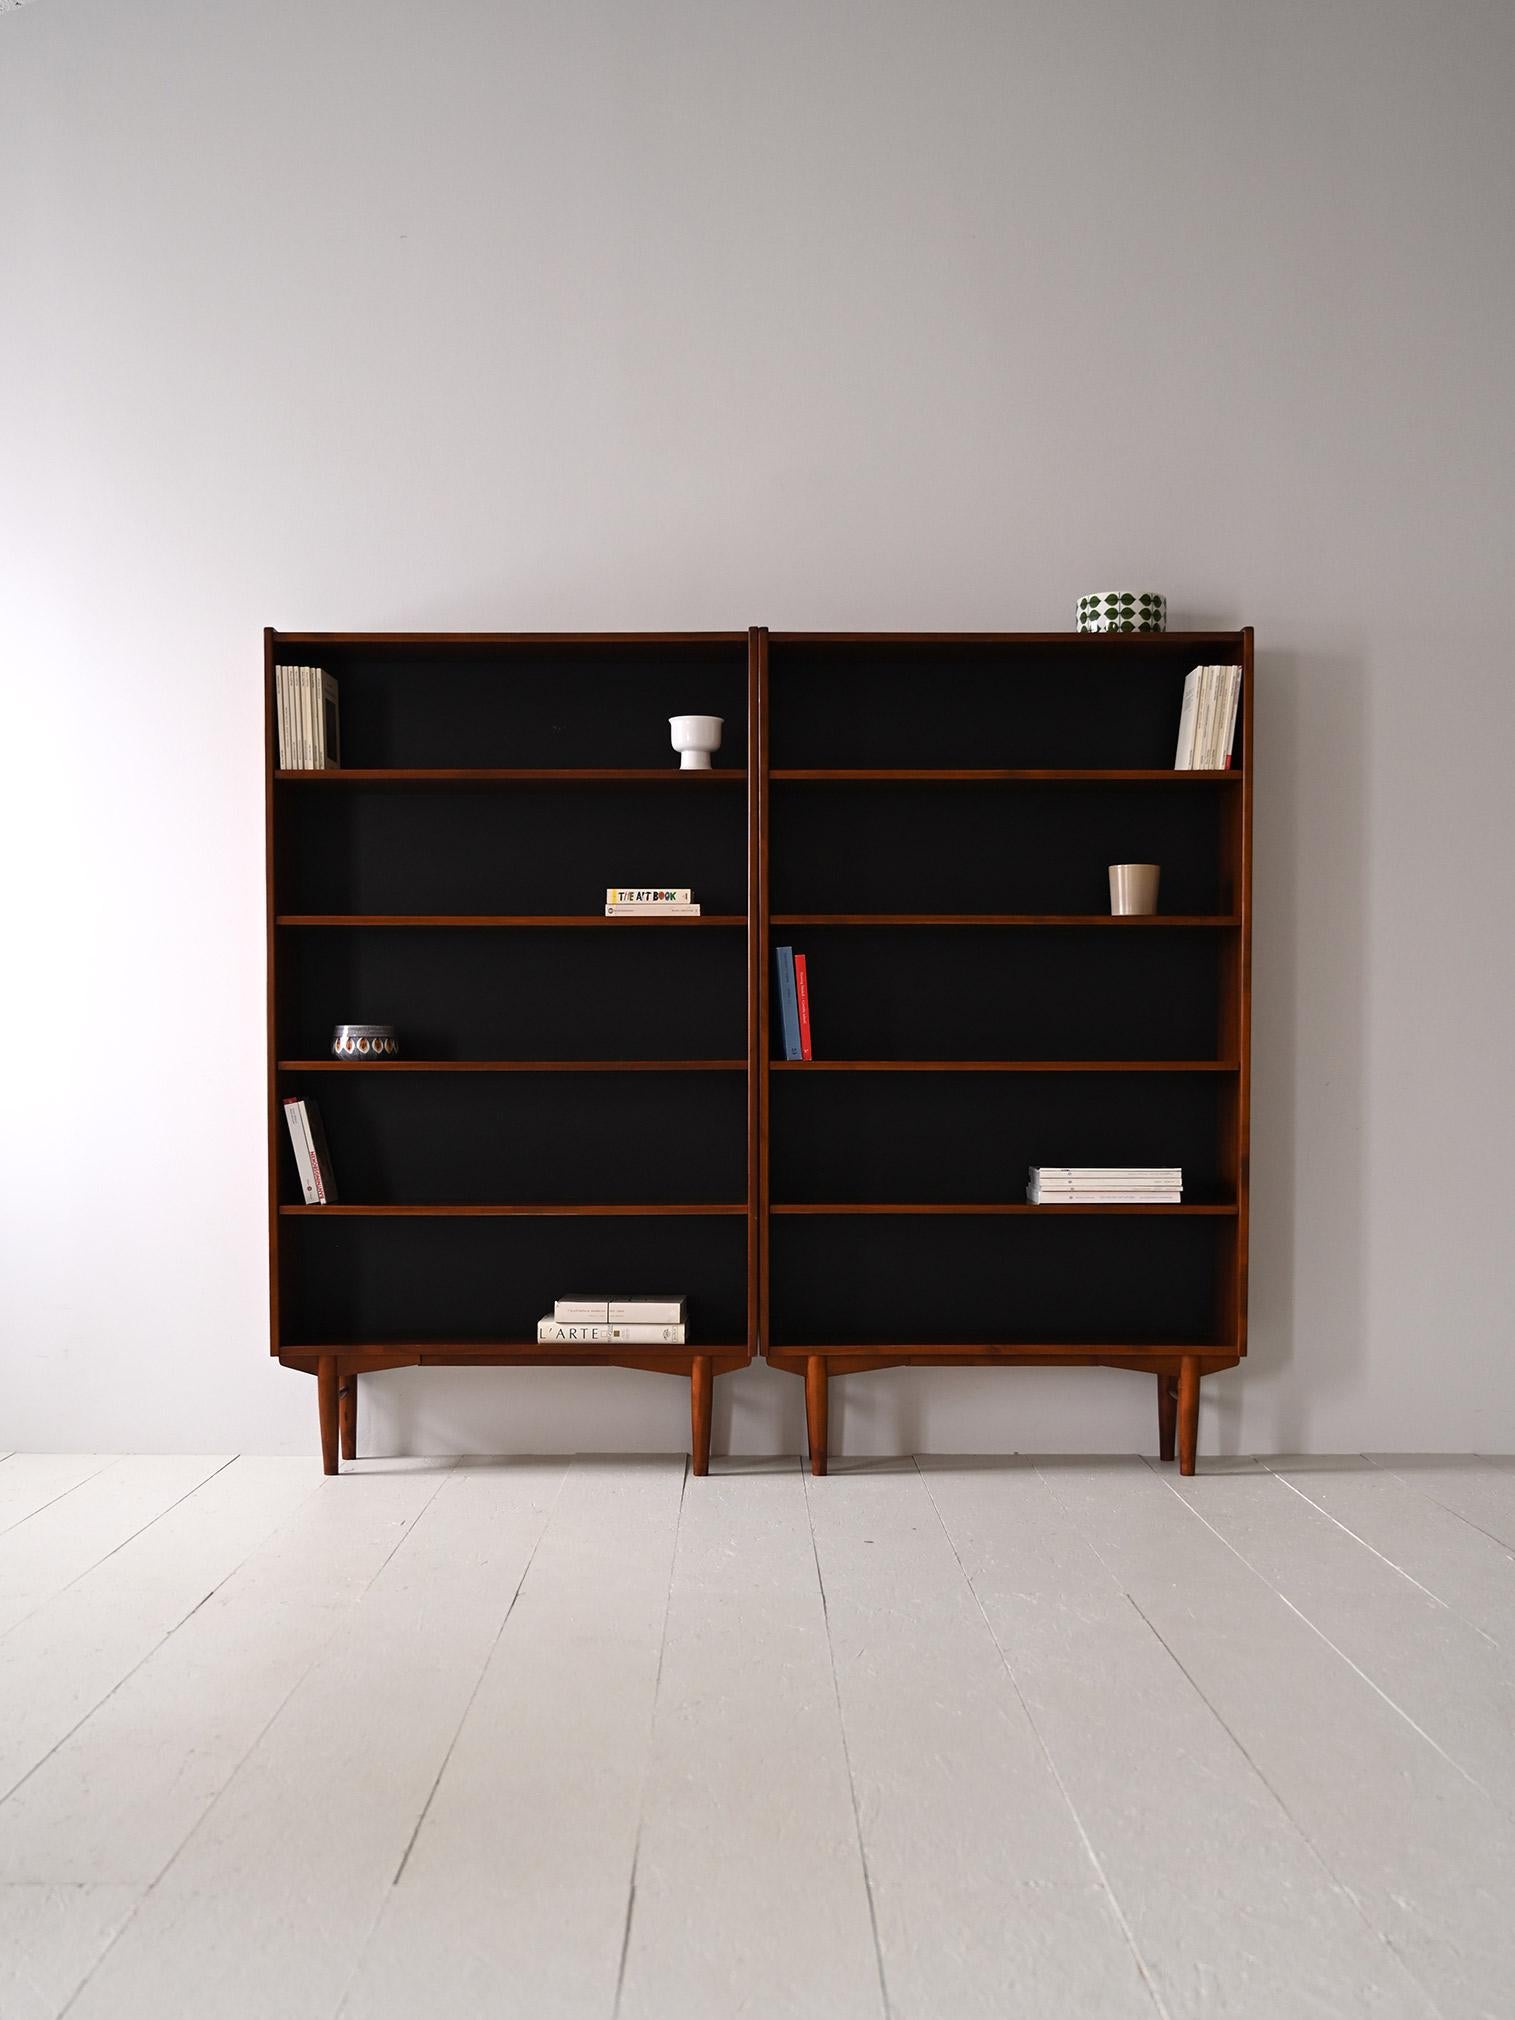 Élégantes bibliothèques scandinaves des années 1960.

Le design minimaliste et fonctionnel de ce meuble est la caractéristique qui le rend moderne et adapté à l'inclusion même dans des maisons déjà meublées.  De plus, le fond noir leur confère une